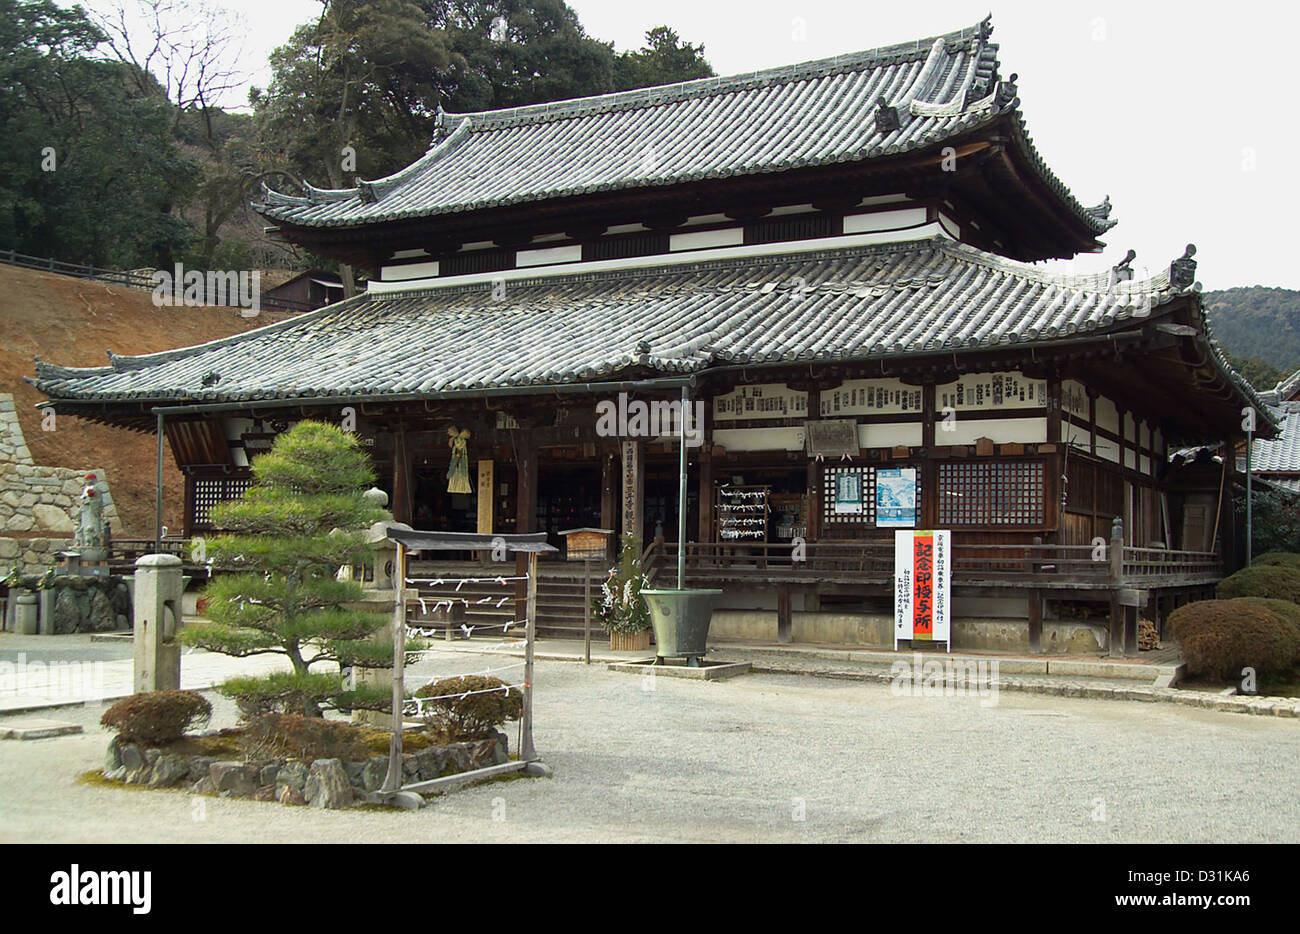 Kannon-do at Mii-dera, a Buddhist temple in Otsu, Shiga Prefecture, Japan. Stock Photo